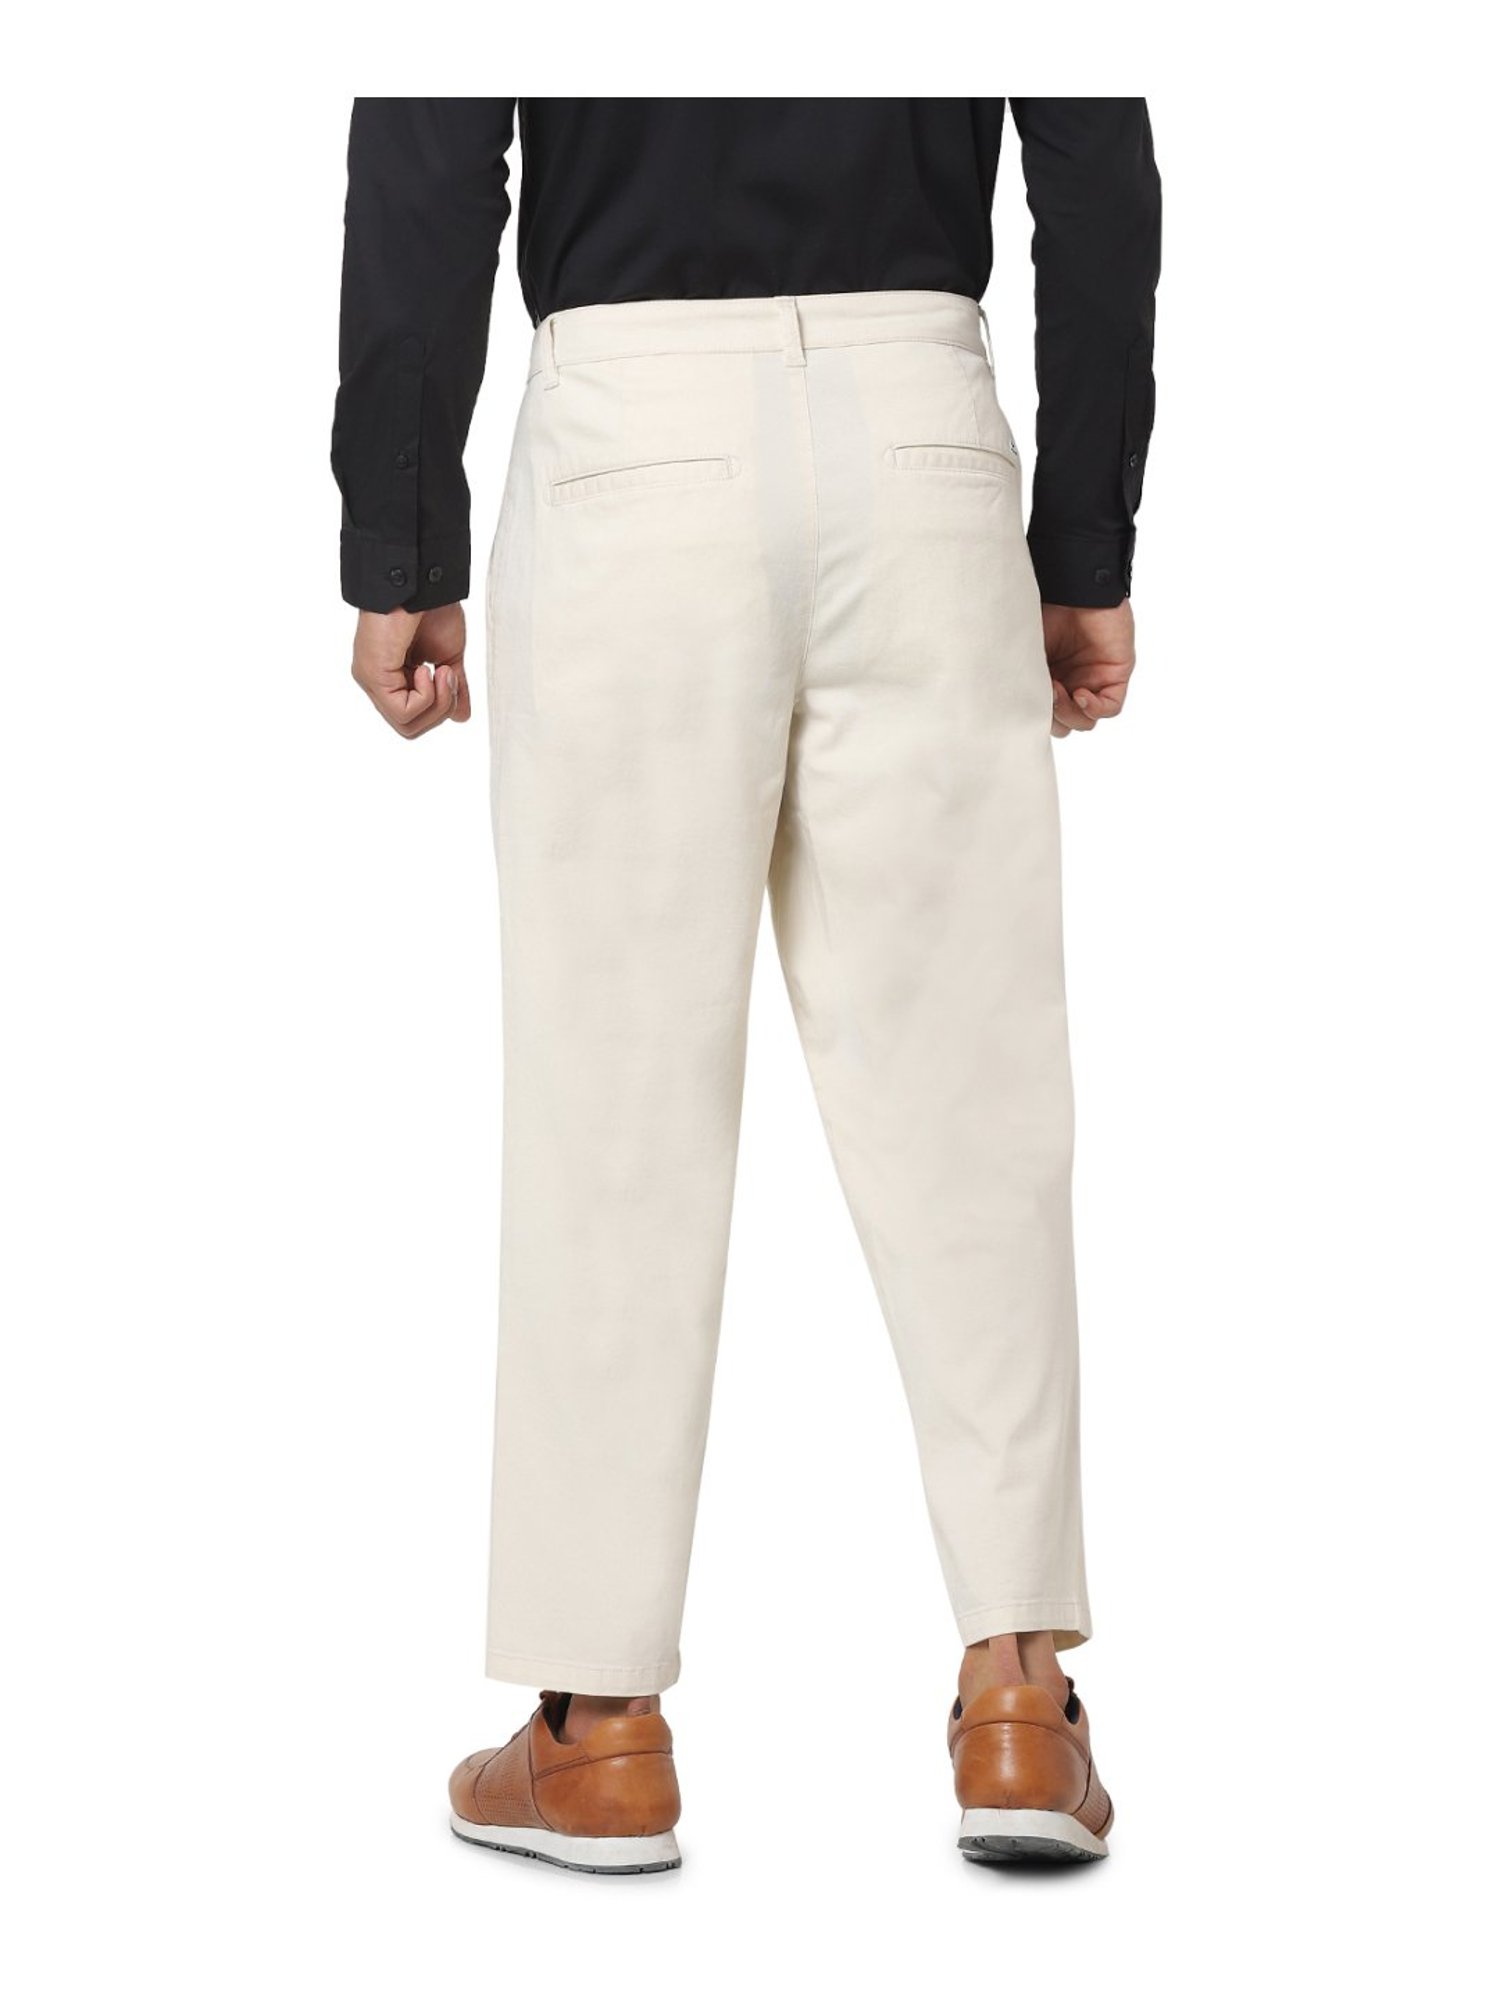 Black Plain Eco Cotton Mens Corduroy Trousers Casual Wear